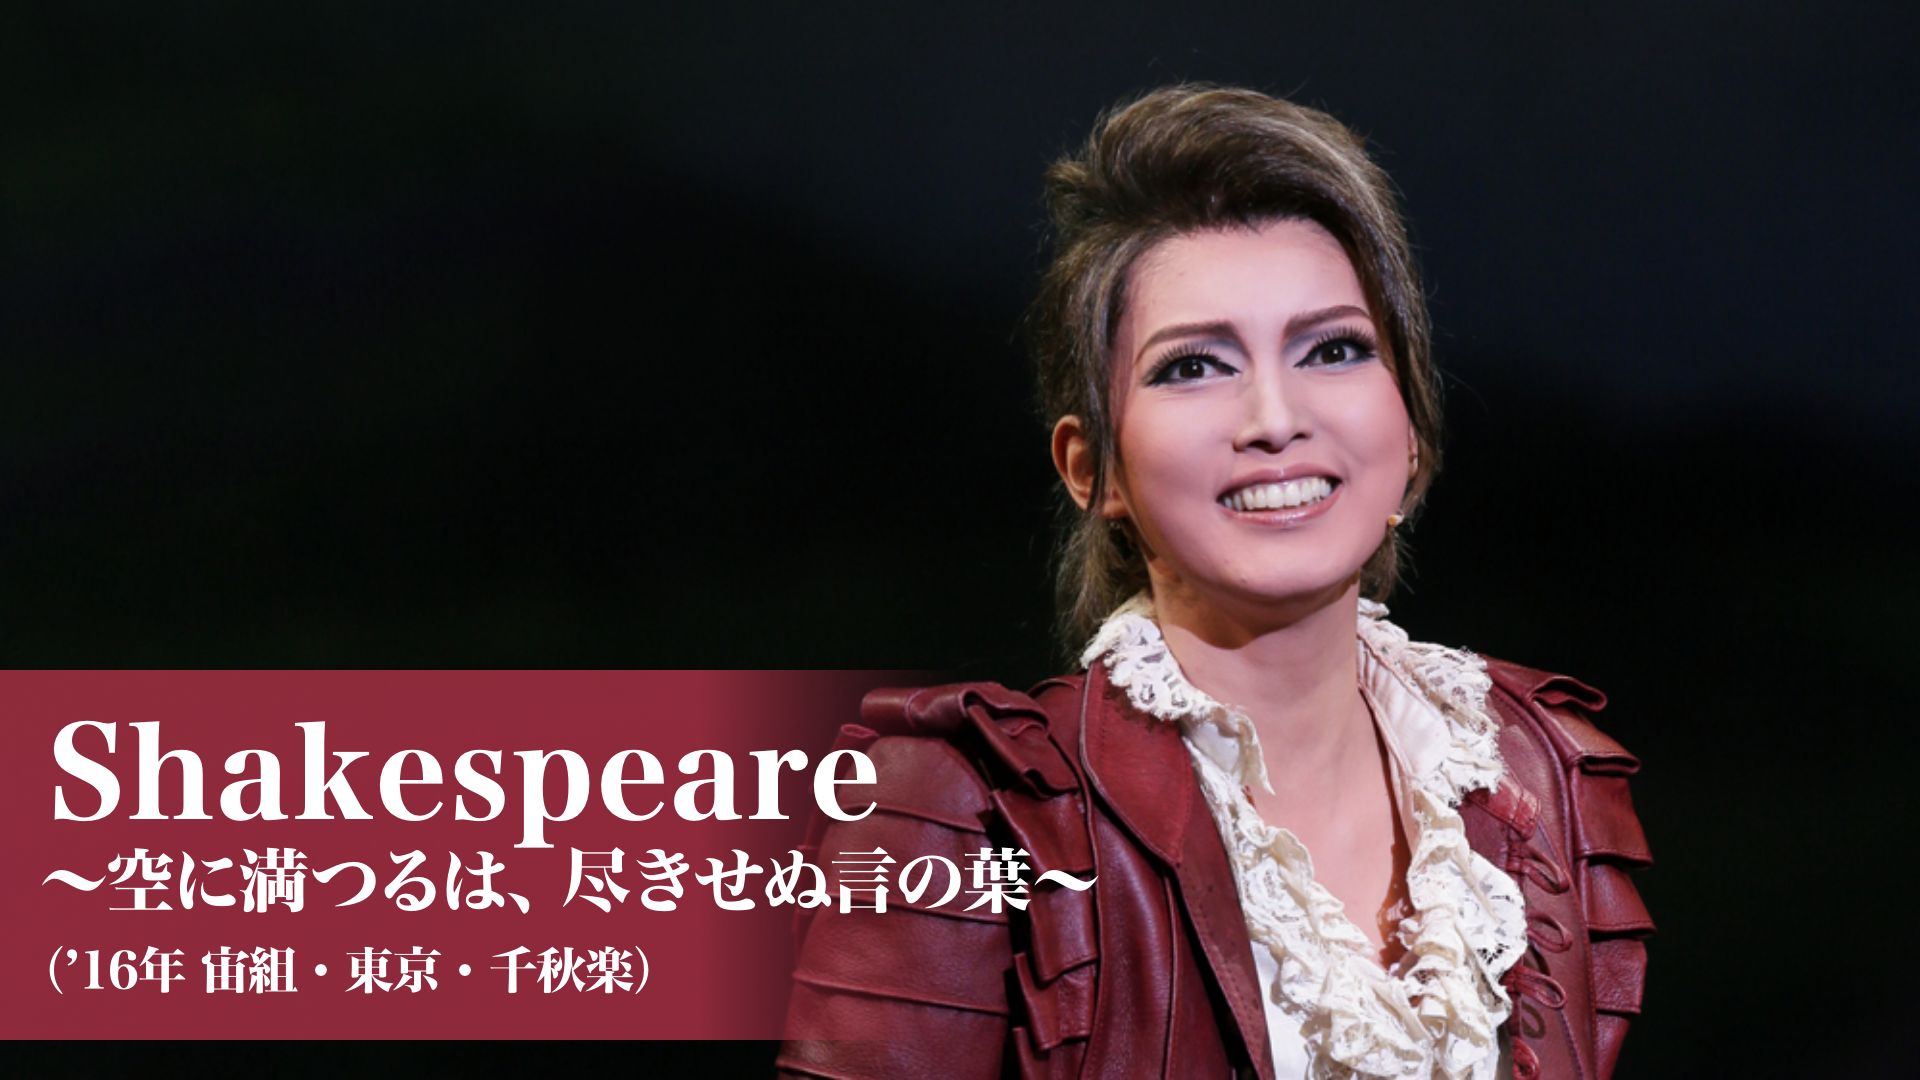 宝塚歌劇 Shakespeare -空に満つるは、尽きせぬ言の葉-(’16年宙組・東京・千秋楽)